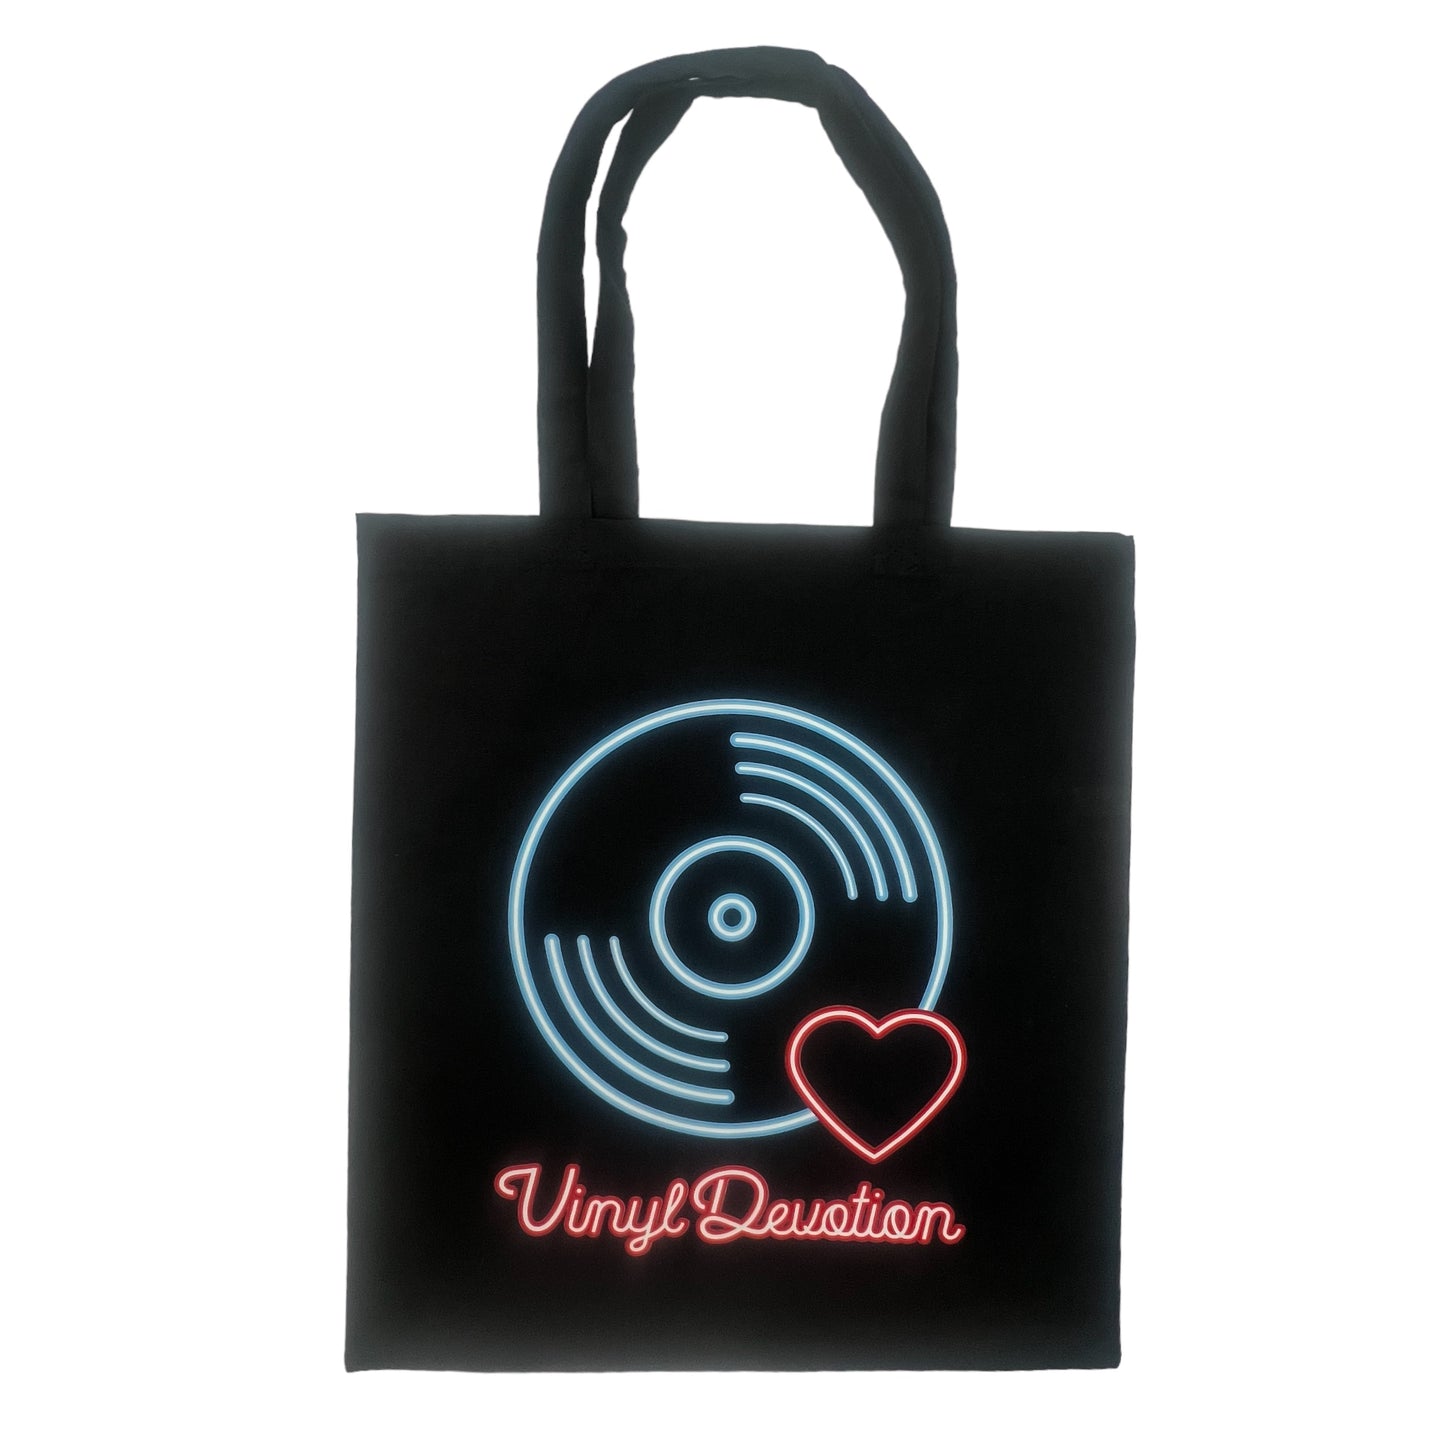 Vinyl Devotion Tote Bags